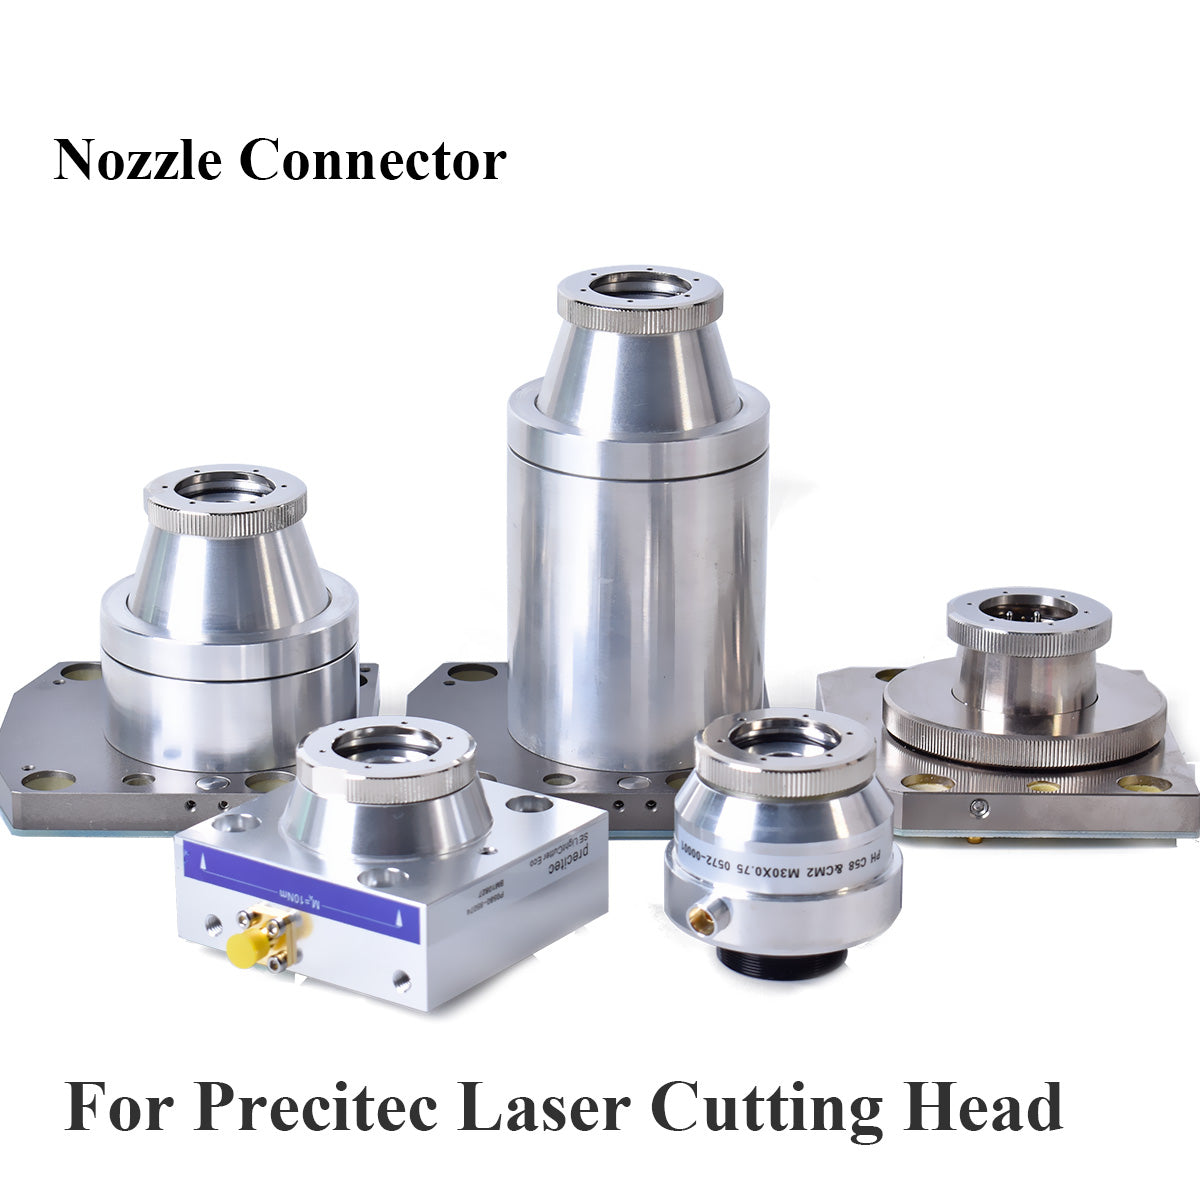 Startnow Laser Nozzle Sensor Connector Nozzle Connection Part For Precitec CM2 SE Series ProCutter HANS Fiber Laser Cutting Head